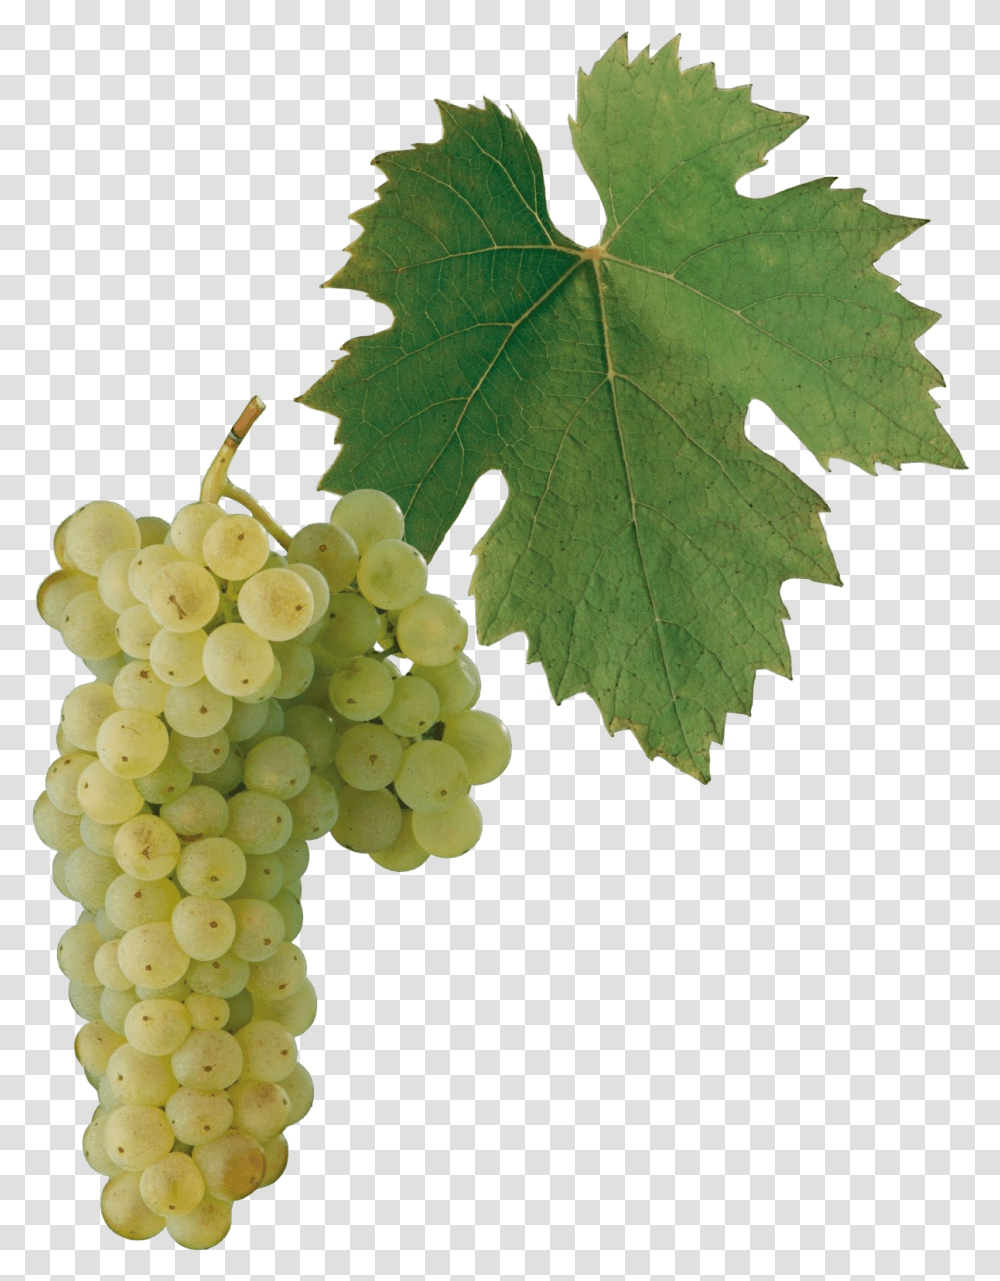 Gruner Veltliner Grape, Plant, Grapes, Fruit, Food Transparent Png